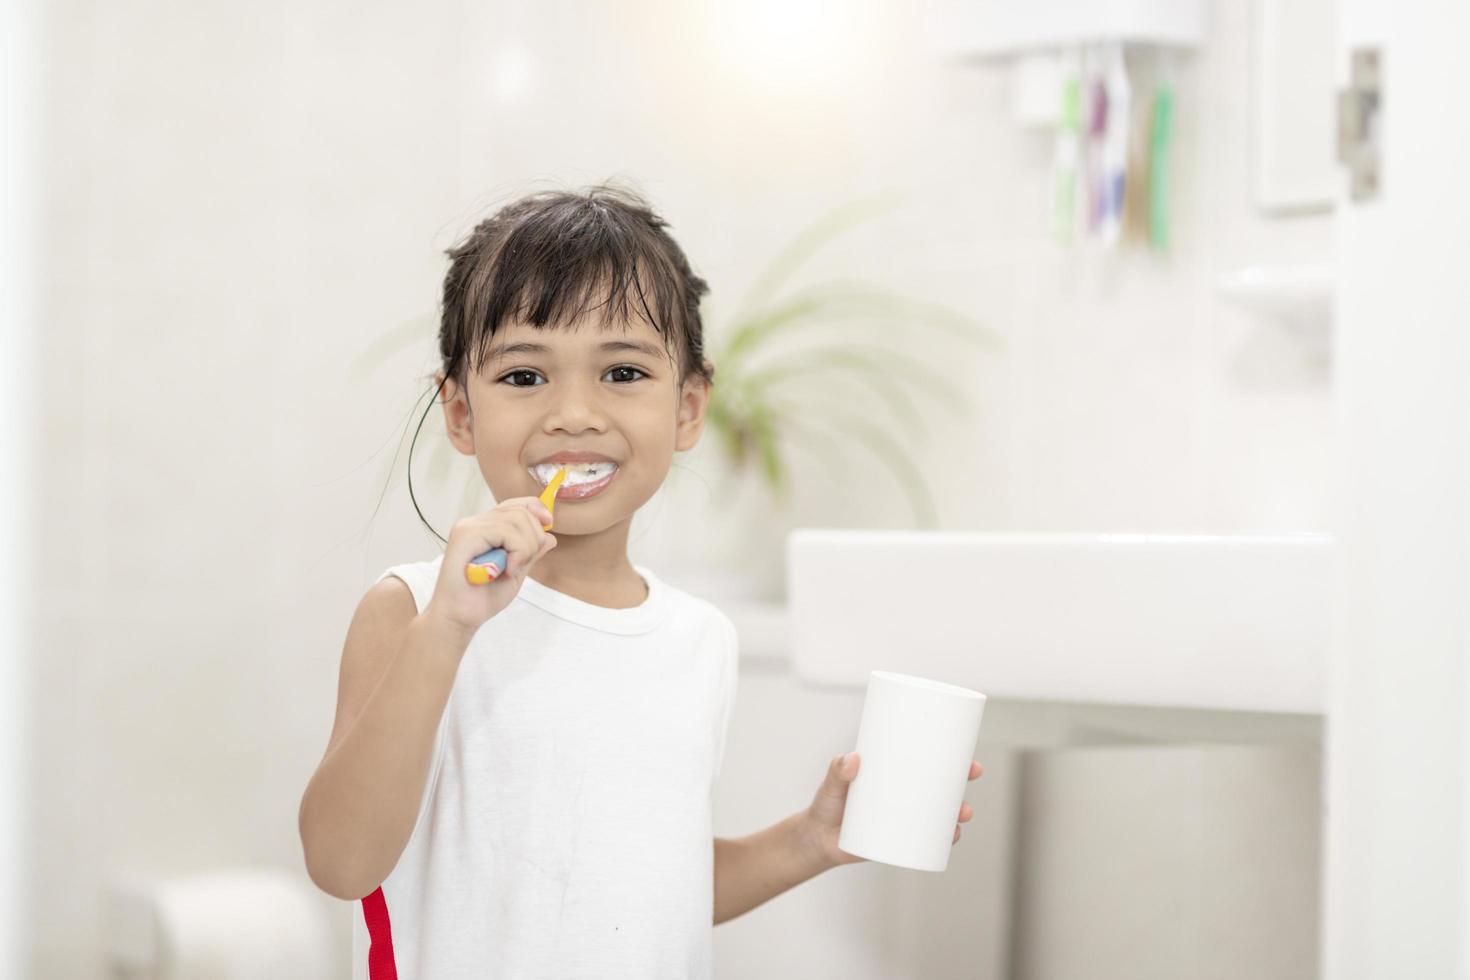 menina bonitinha limpando os dentes com uma escova de dentes no banheiro foto